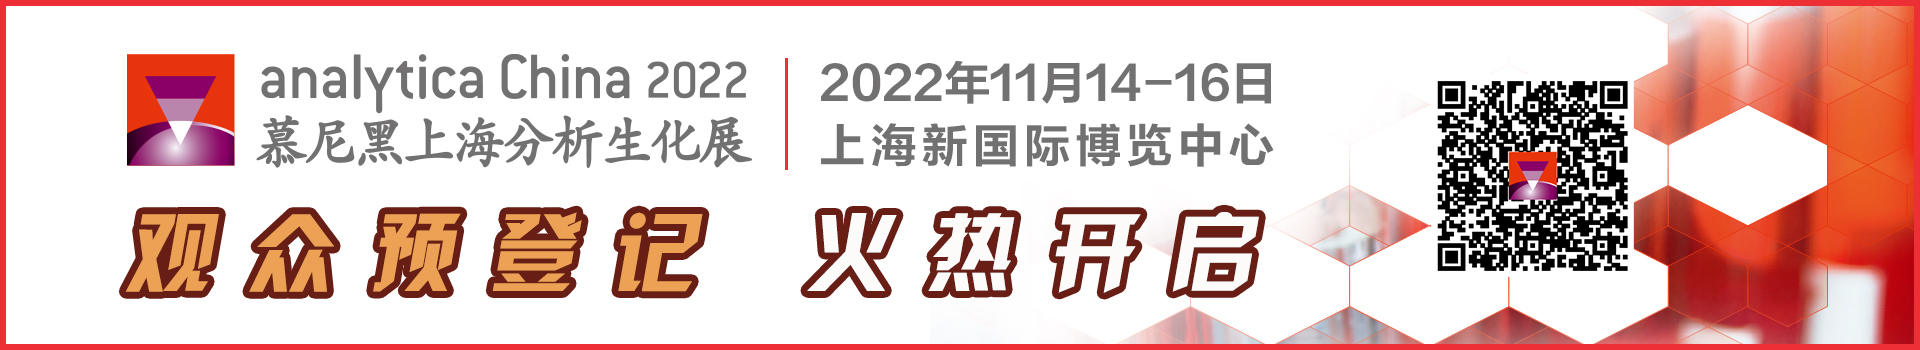 第十一届慕尼黑上海分析生化展（analytica China 2022）